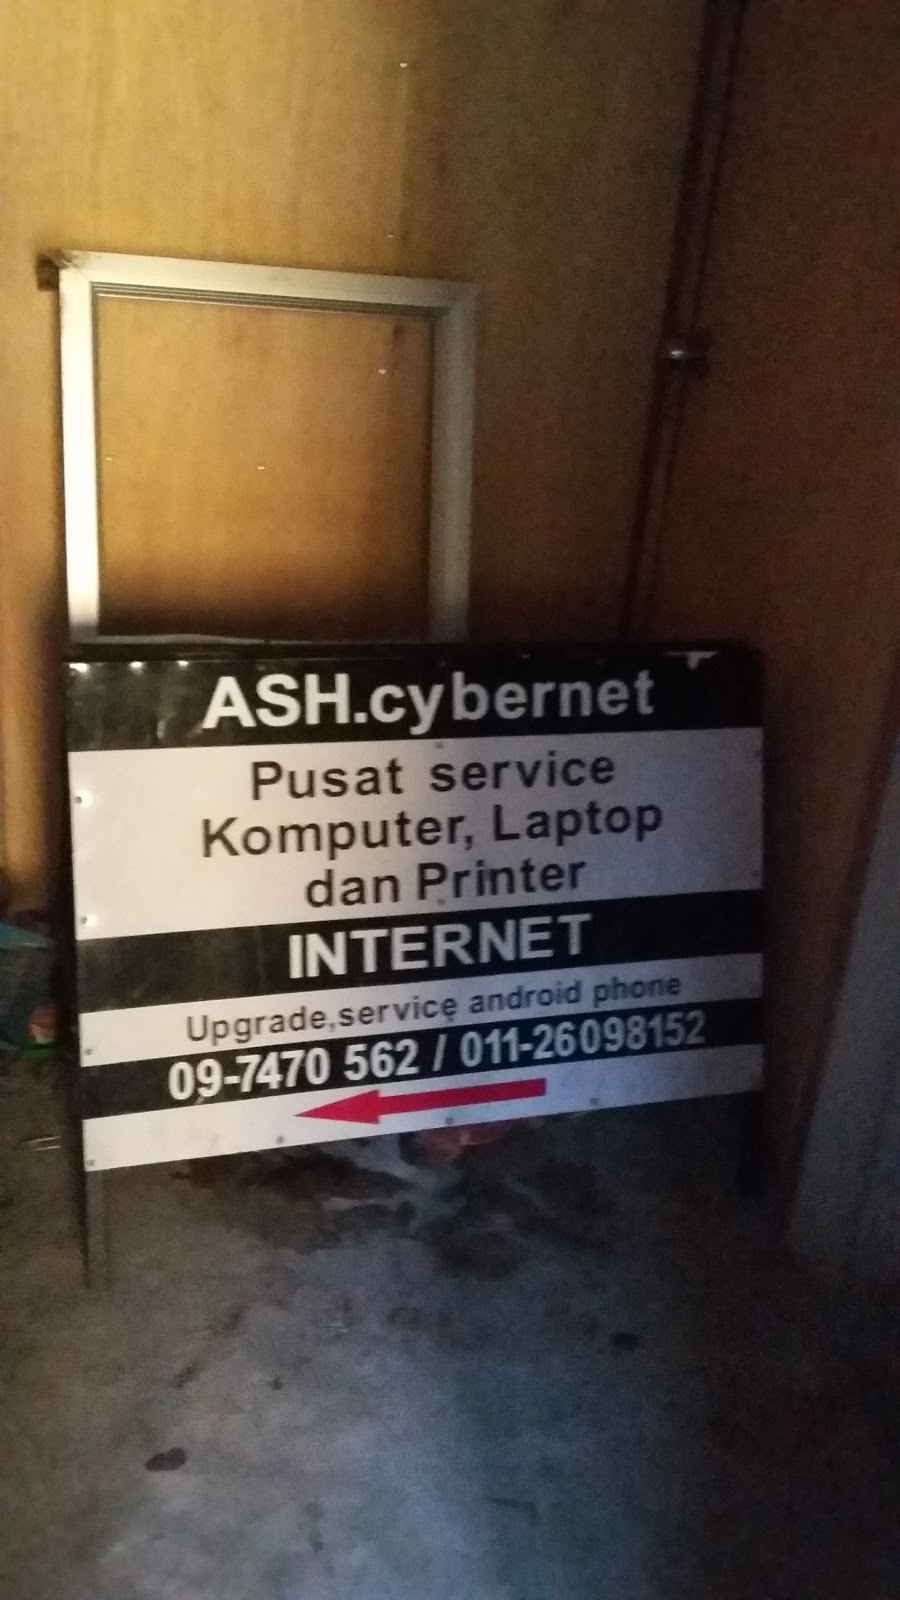 ASH. Cybernet